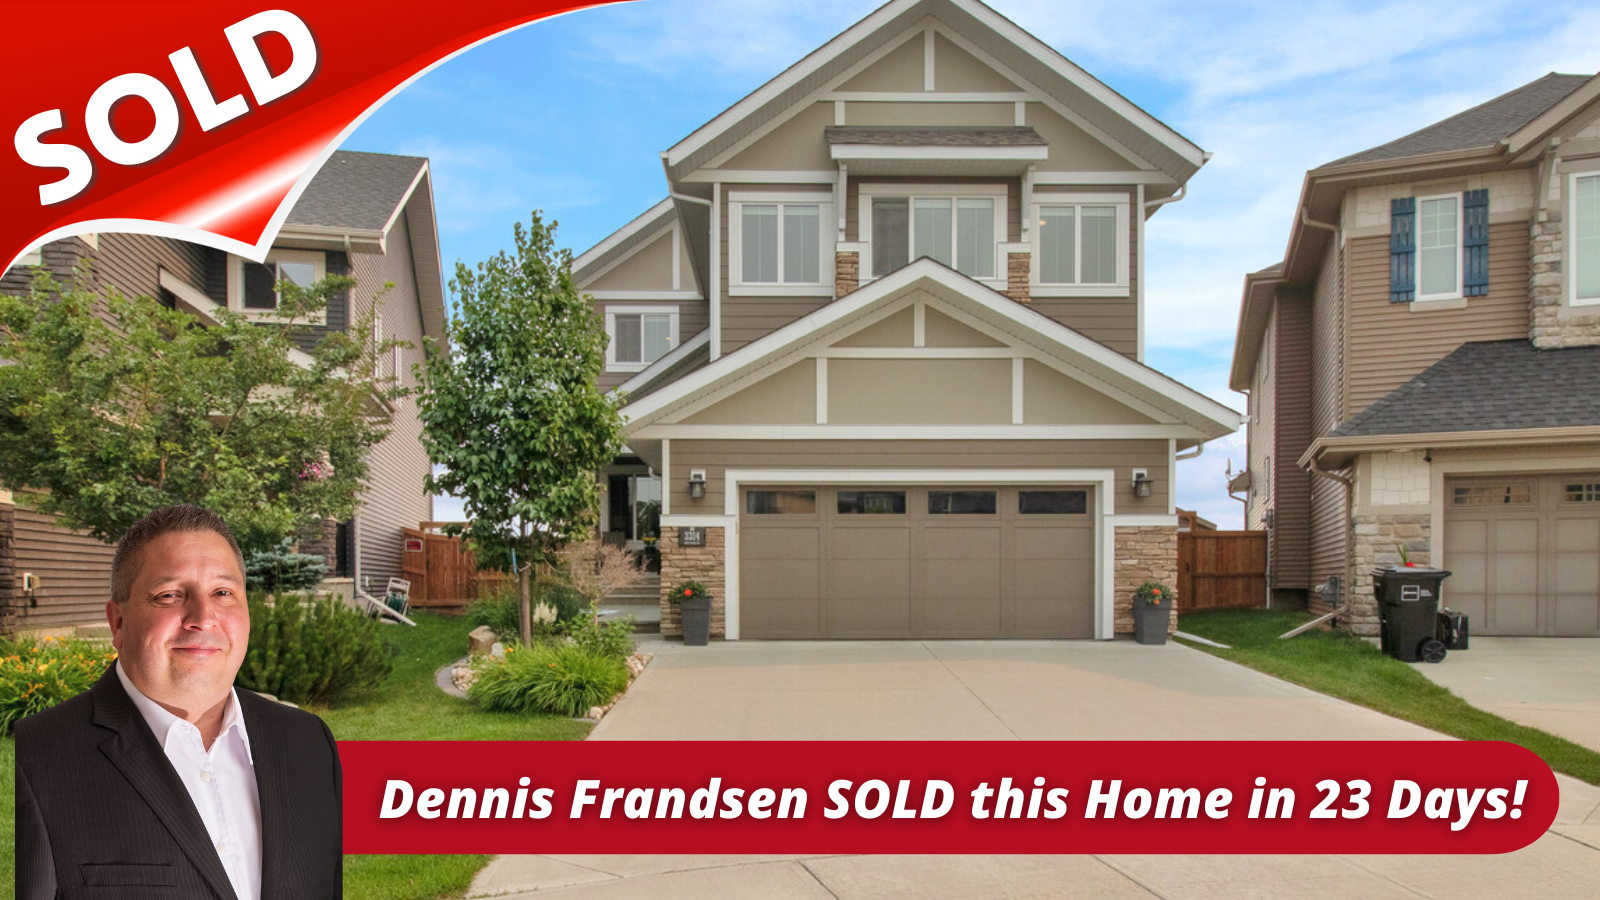 Dennis Frandsen sold this home in 23 Days